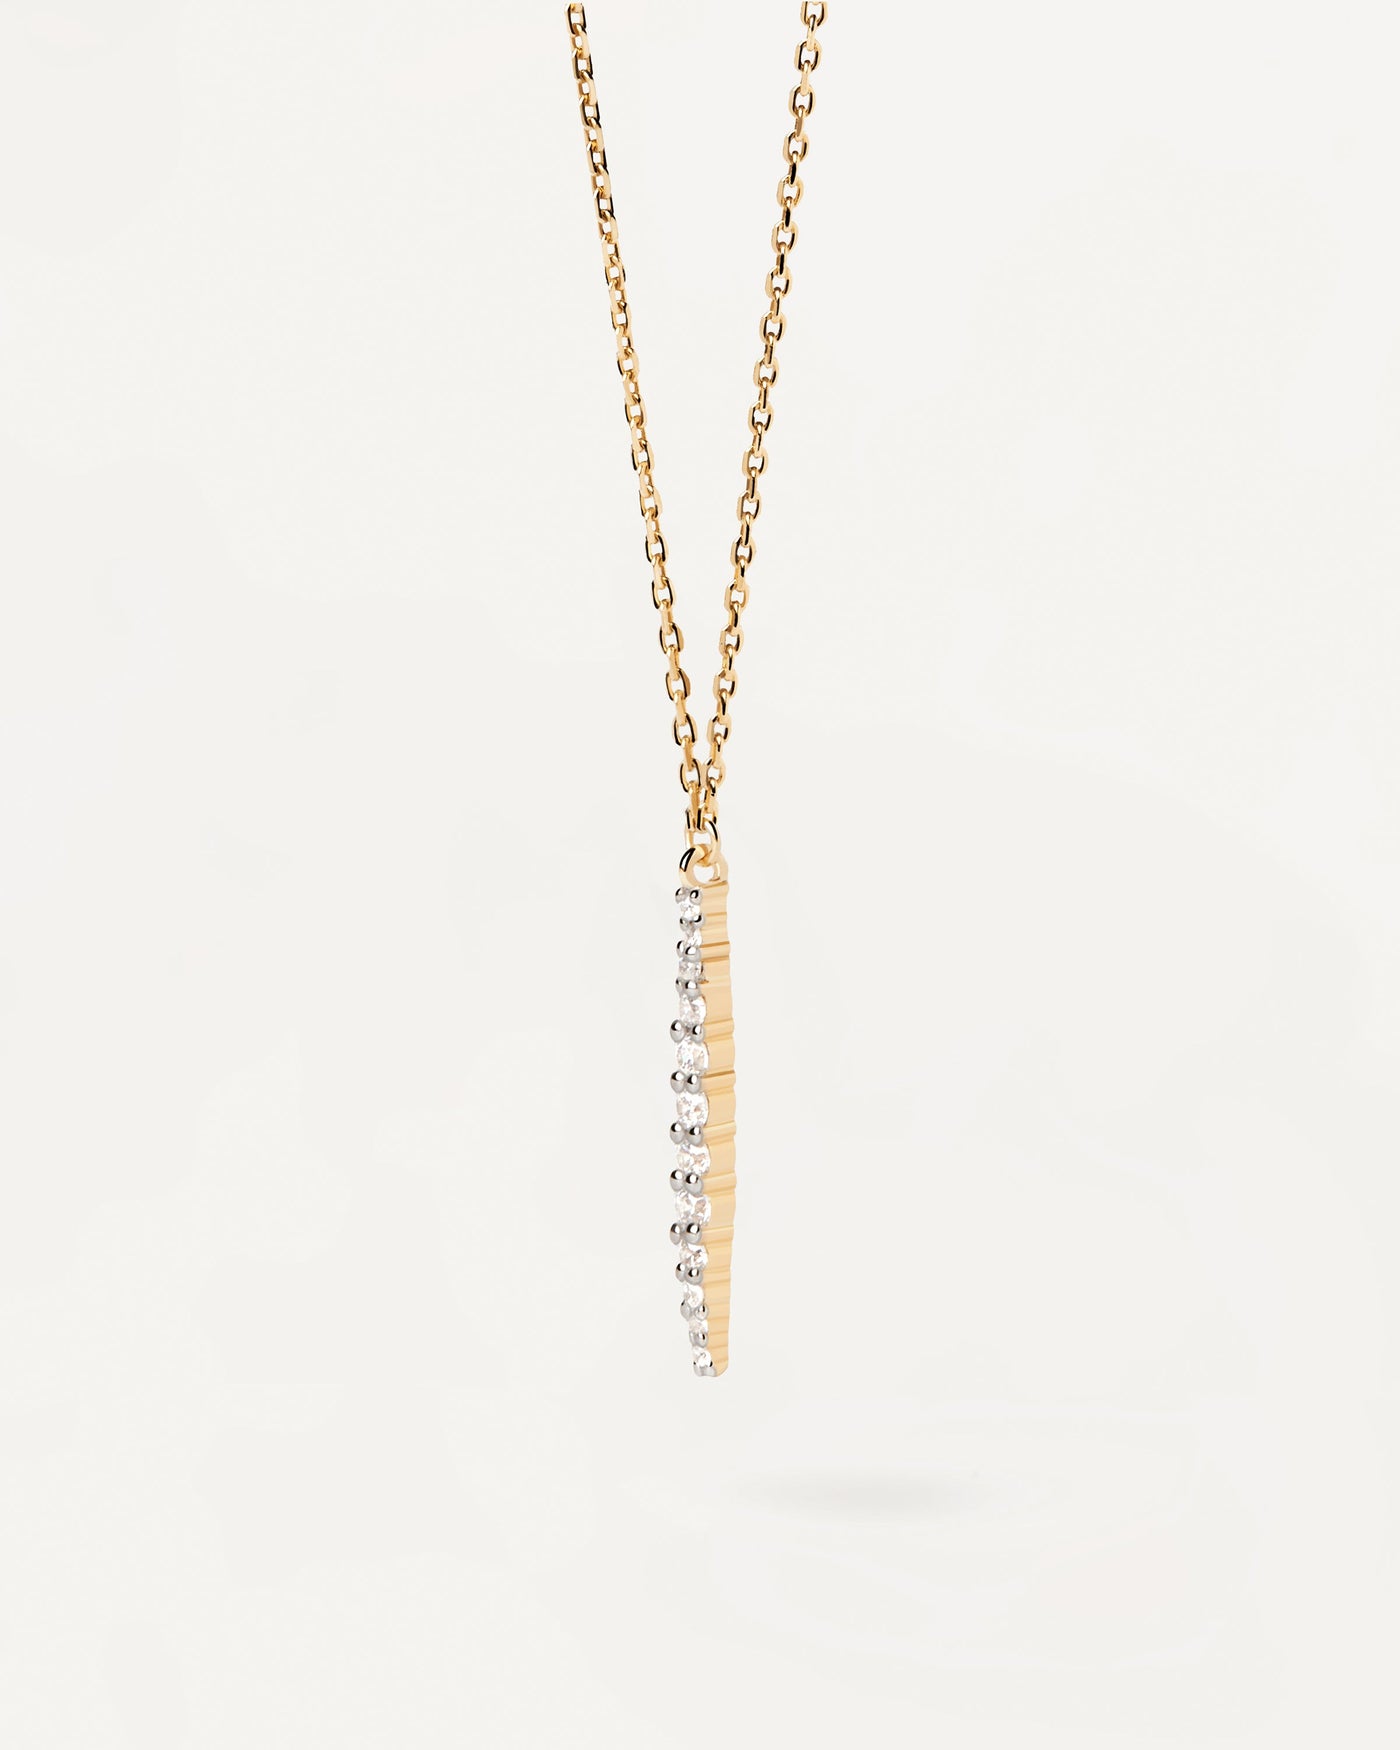 Kate Halskette Aus Gold Mit Diamanten. Halskette aus massivem Gelbgold mit einem 12-Pavé-Diamantanhänger mit 0,17 Karat. Erhalten Sie die neuesten Produkte von PDPAOLA. Geben Sie Ihre Bestellung sicher auf und erhalten Sie diesen Bestseller.